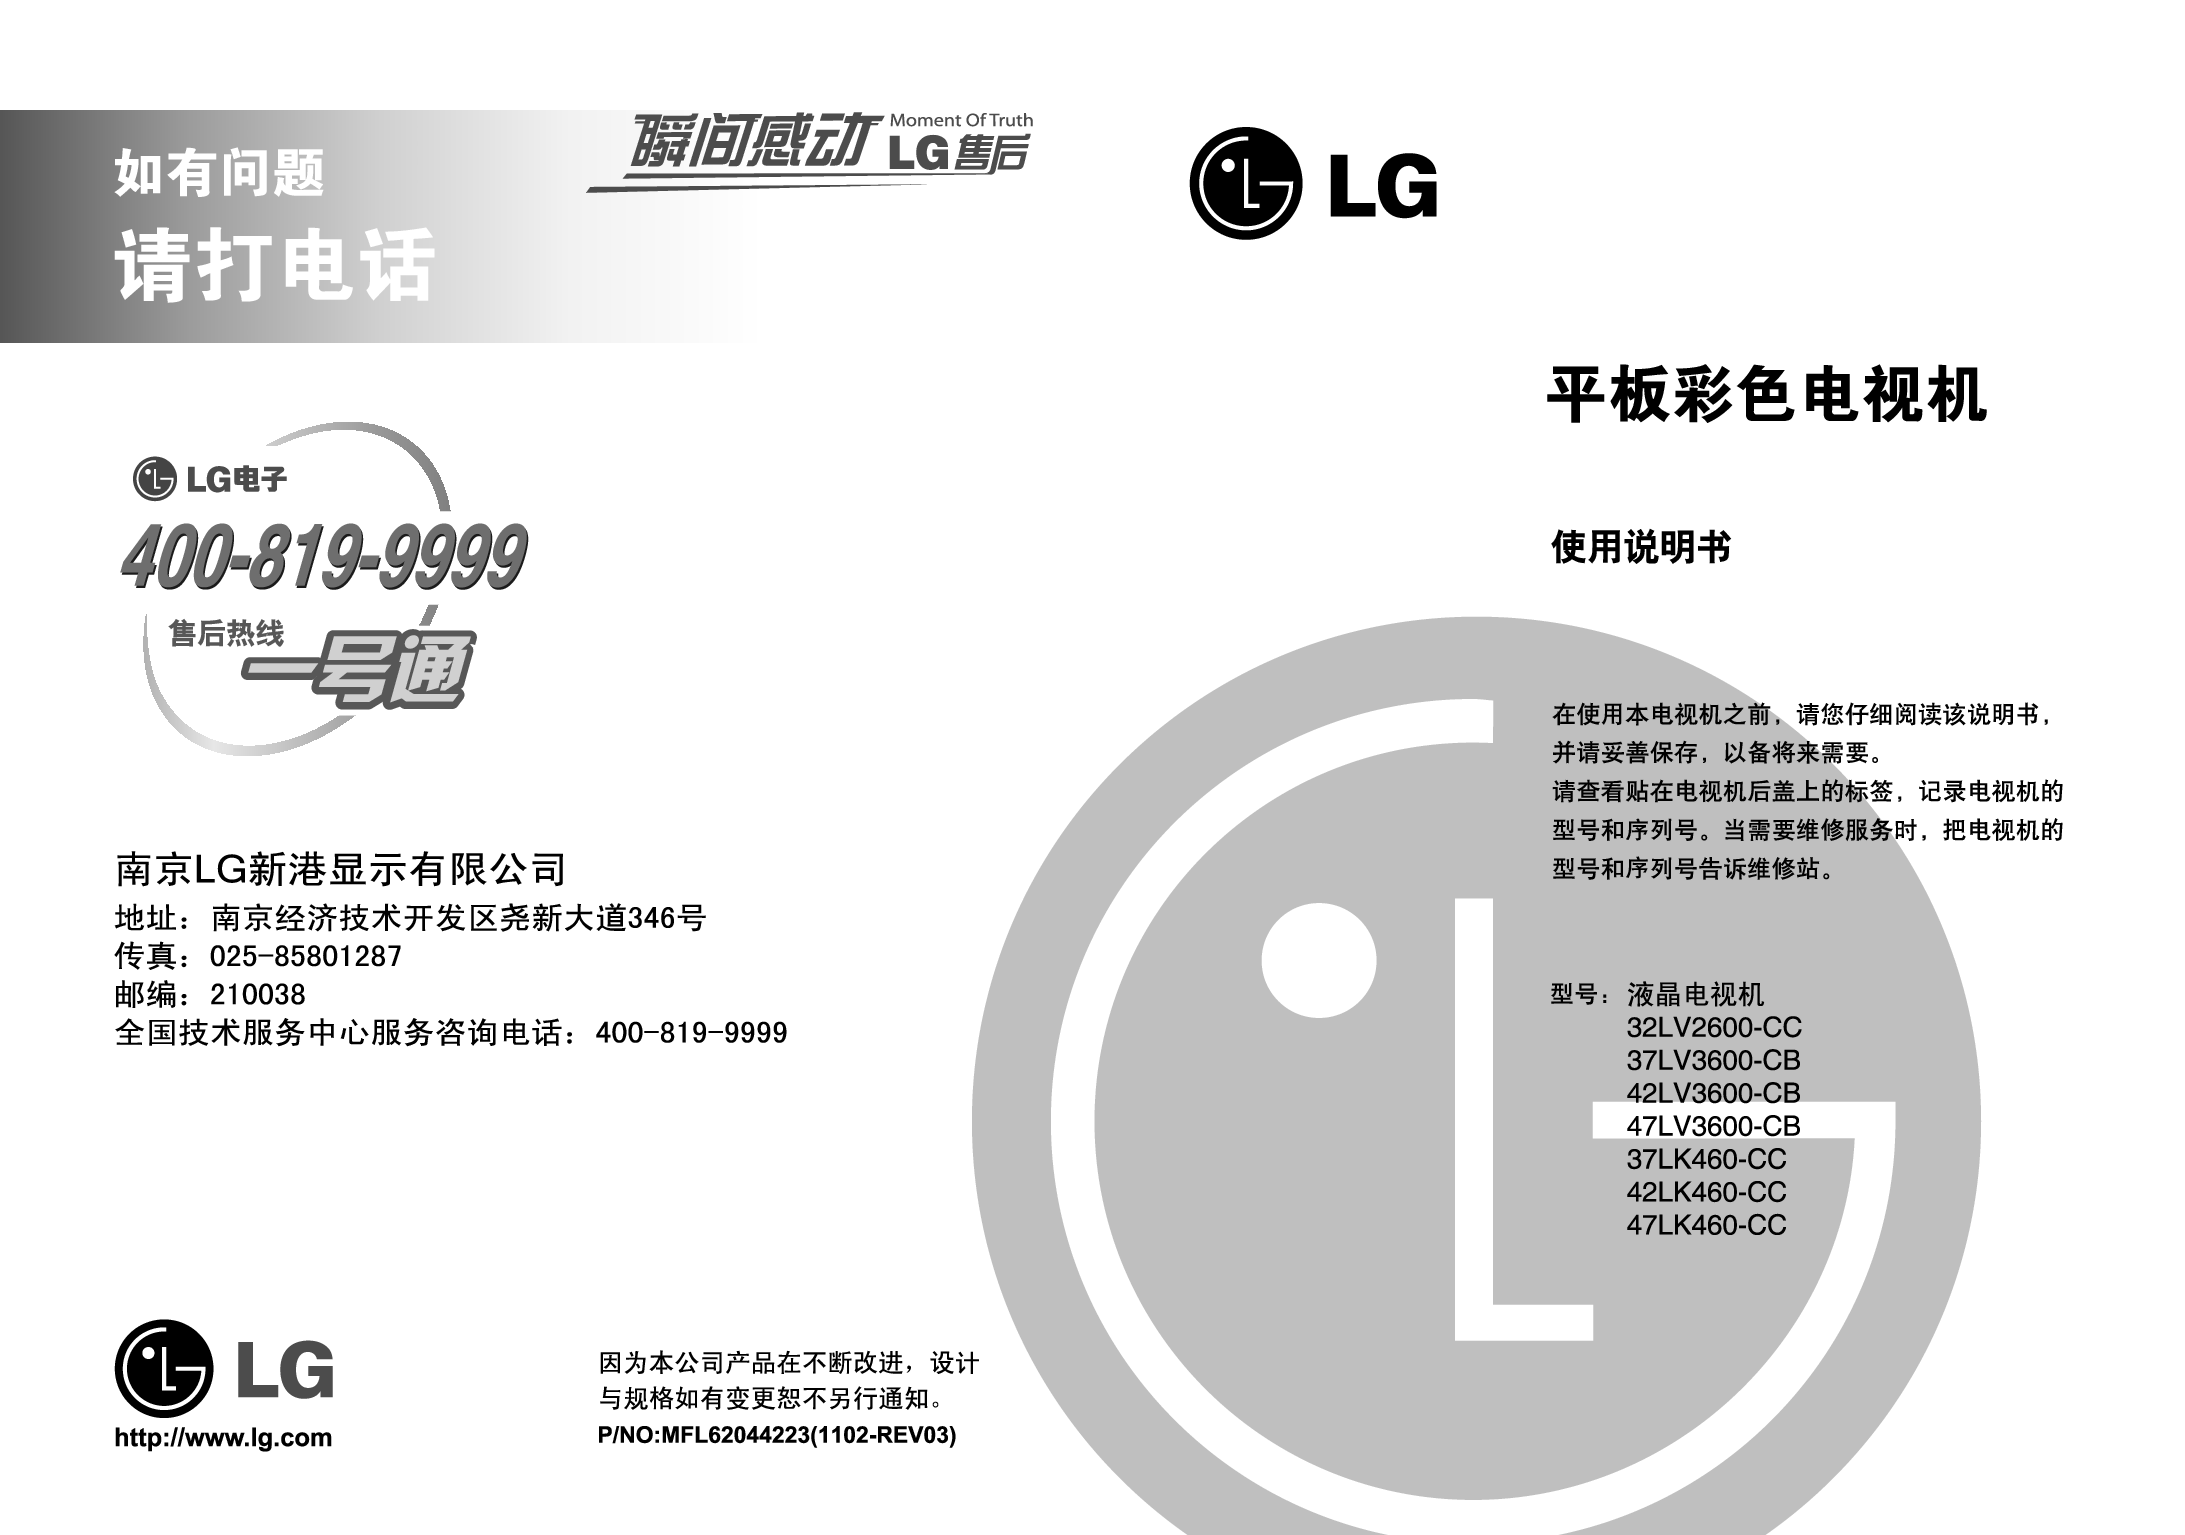 LG 32LV2600-CC, 47LK460-CC 使用说明书 封面